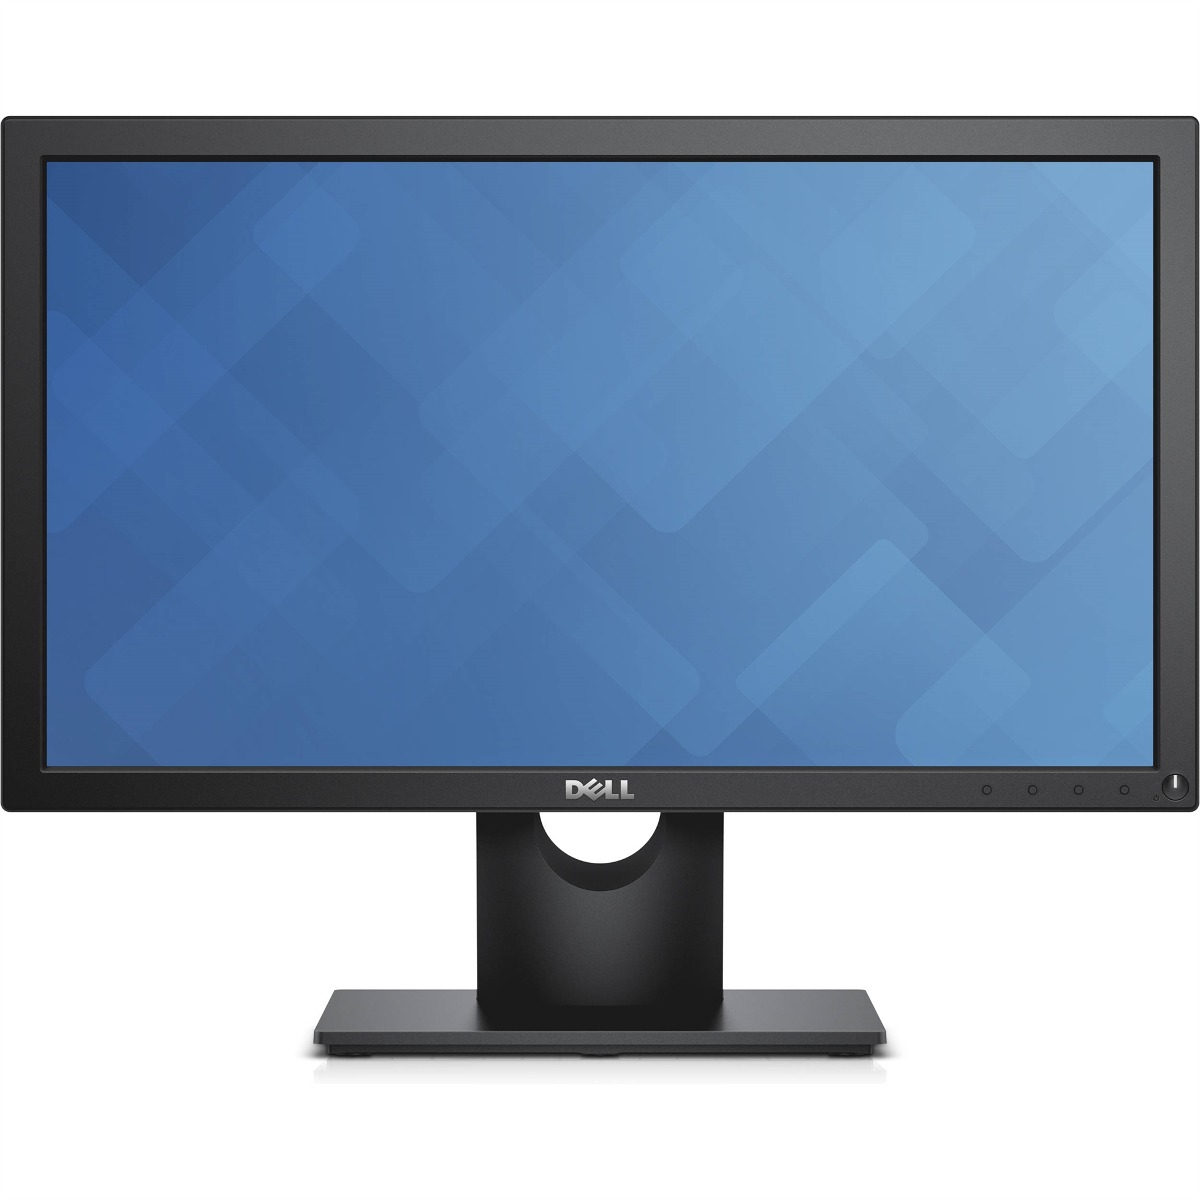 Monitor Led Dell 210-aglw E2016h 19.5p 1600 X 900 60hz 5ms - $ 2,599.00